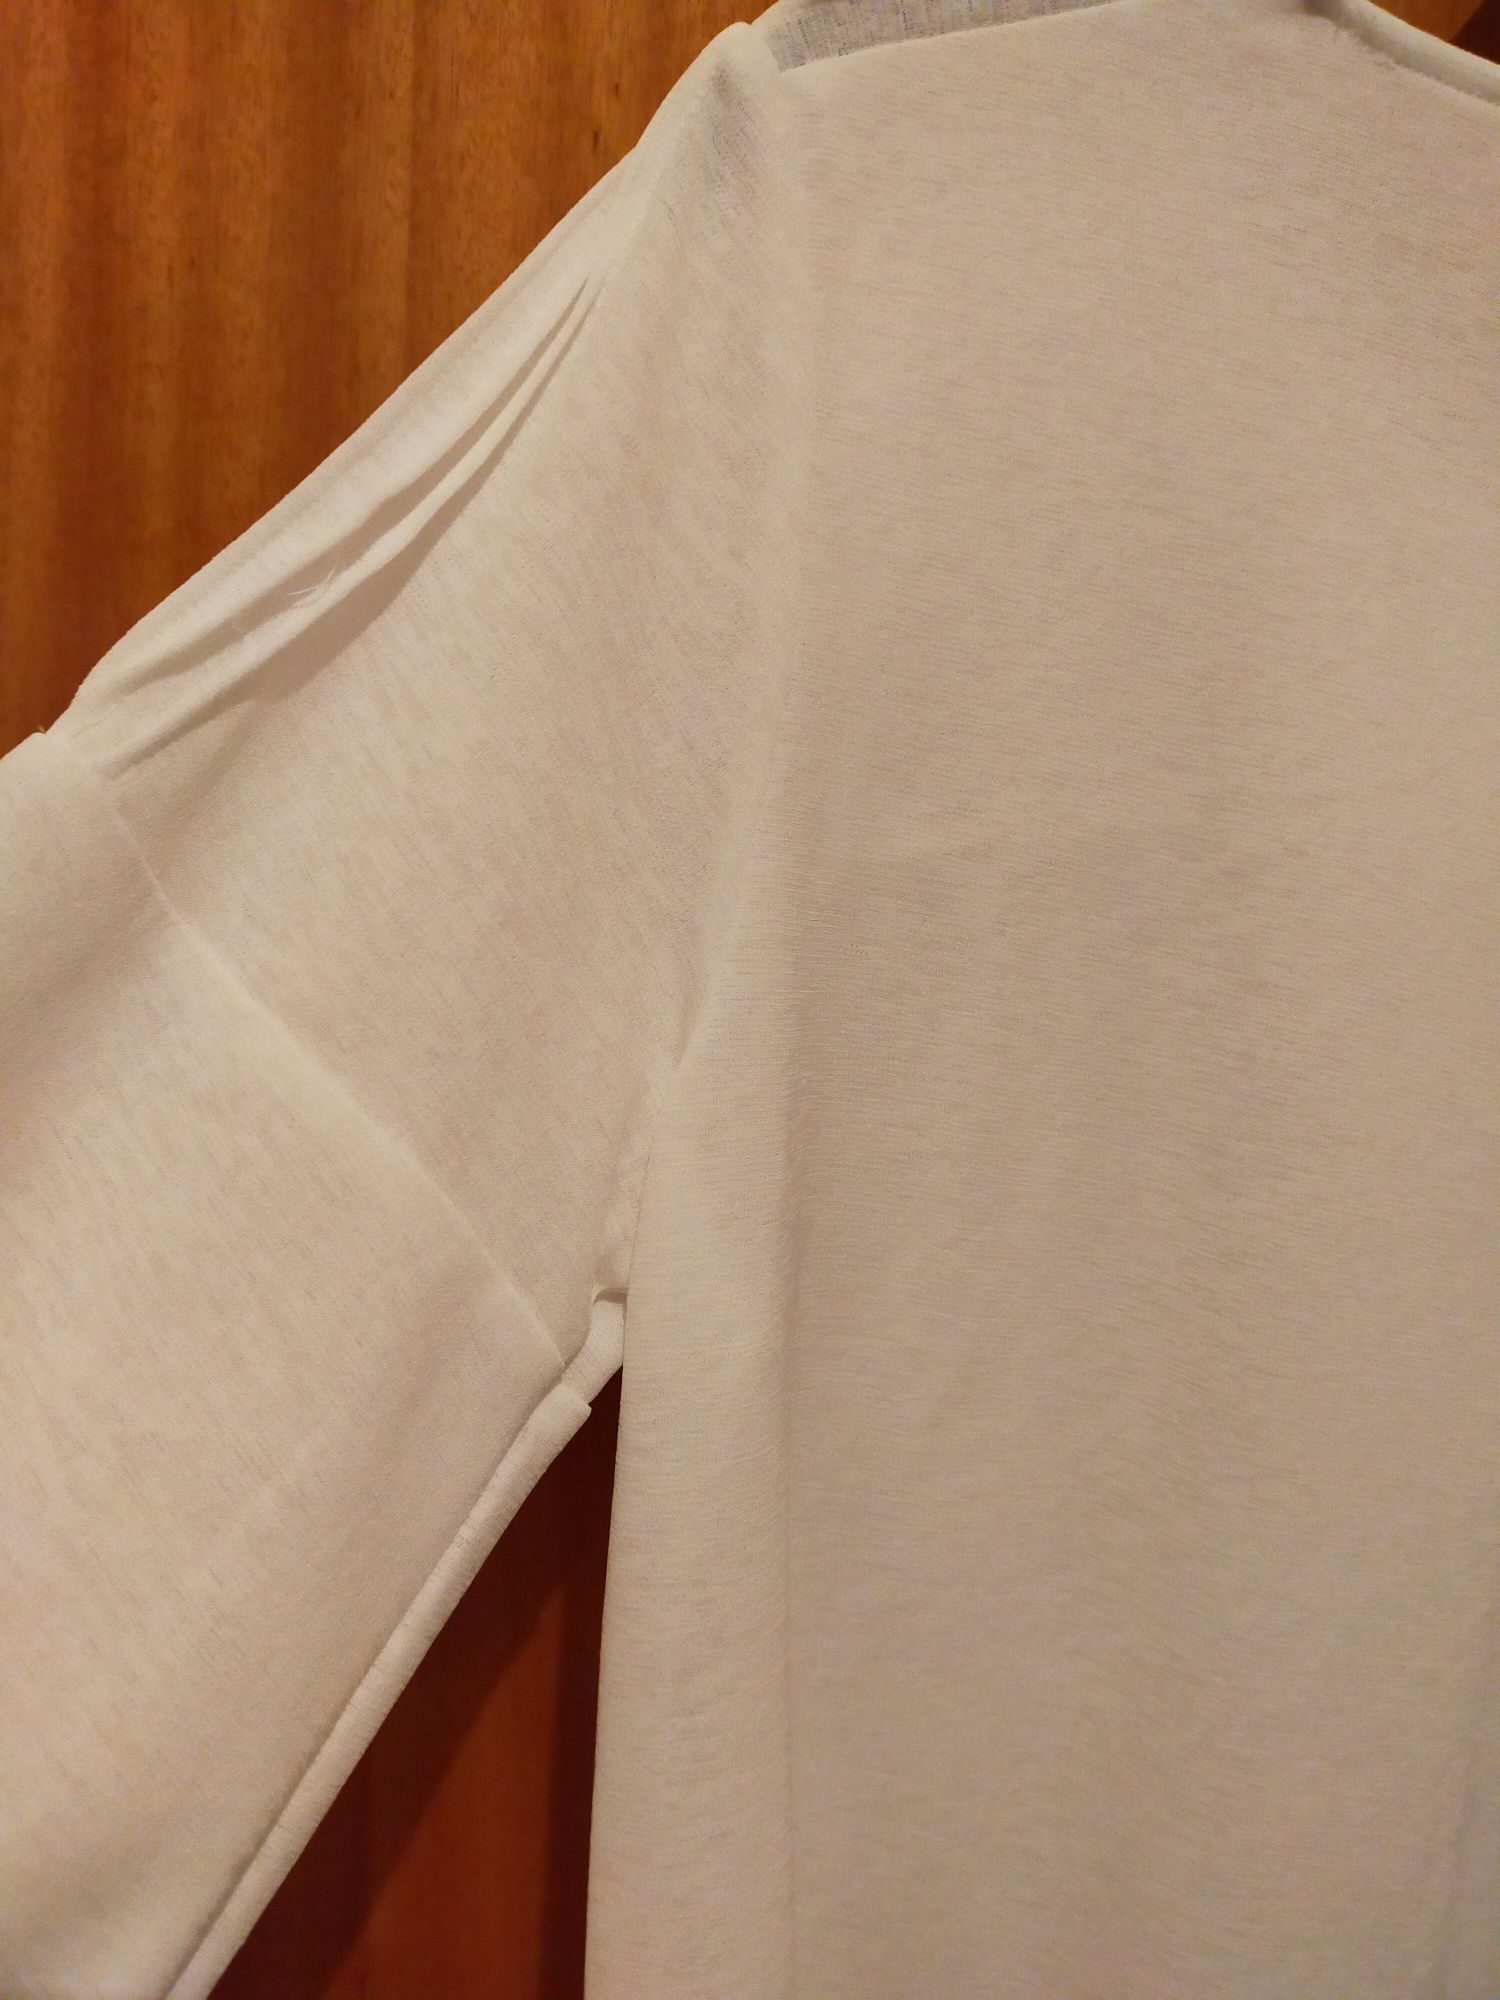 Camisola/blusa branca da MO - tamanho M / 38